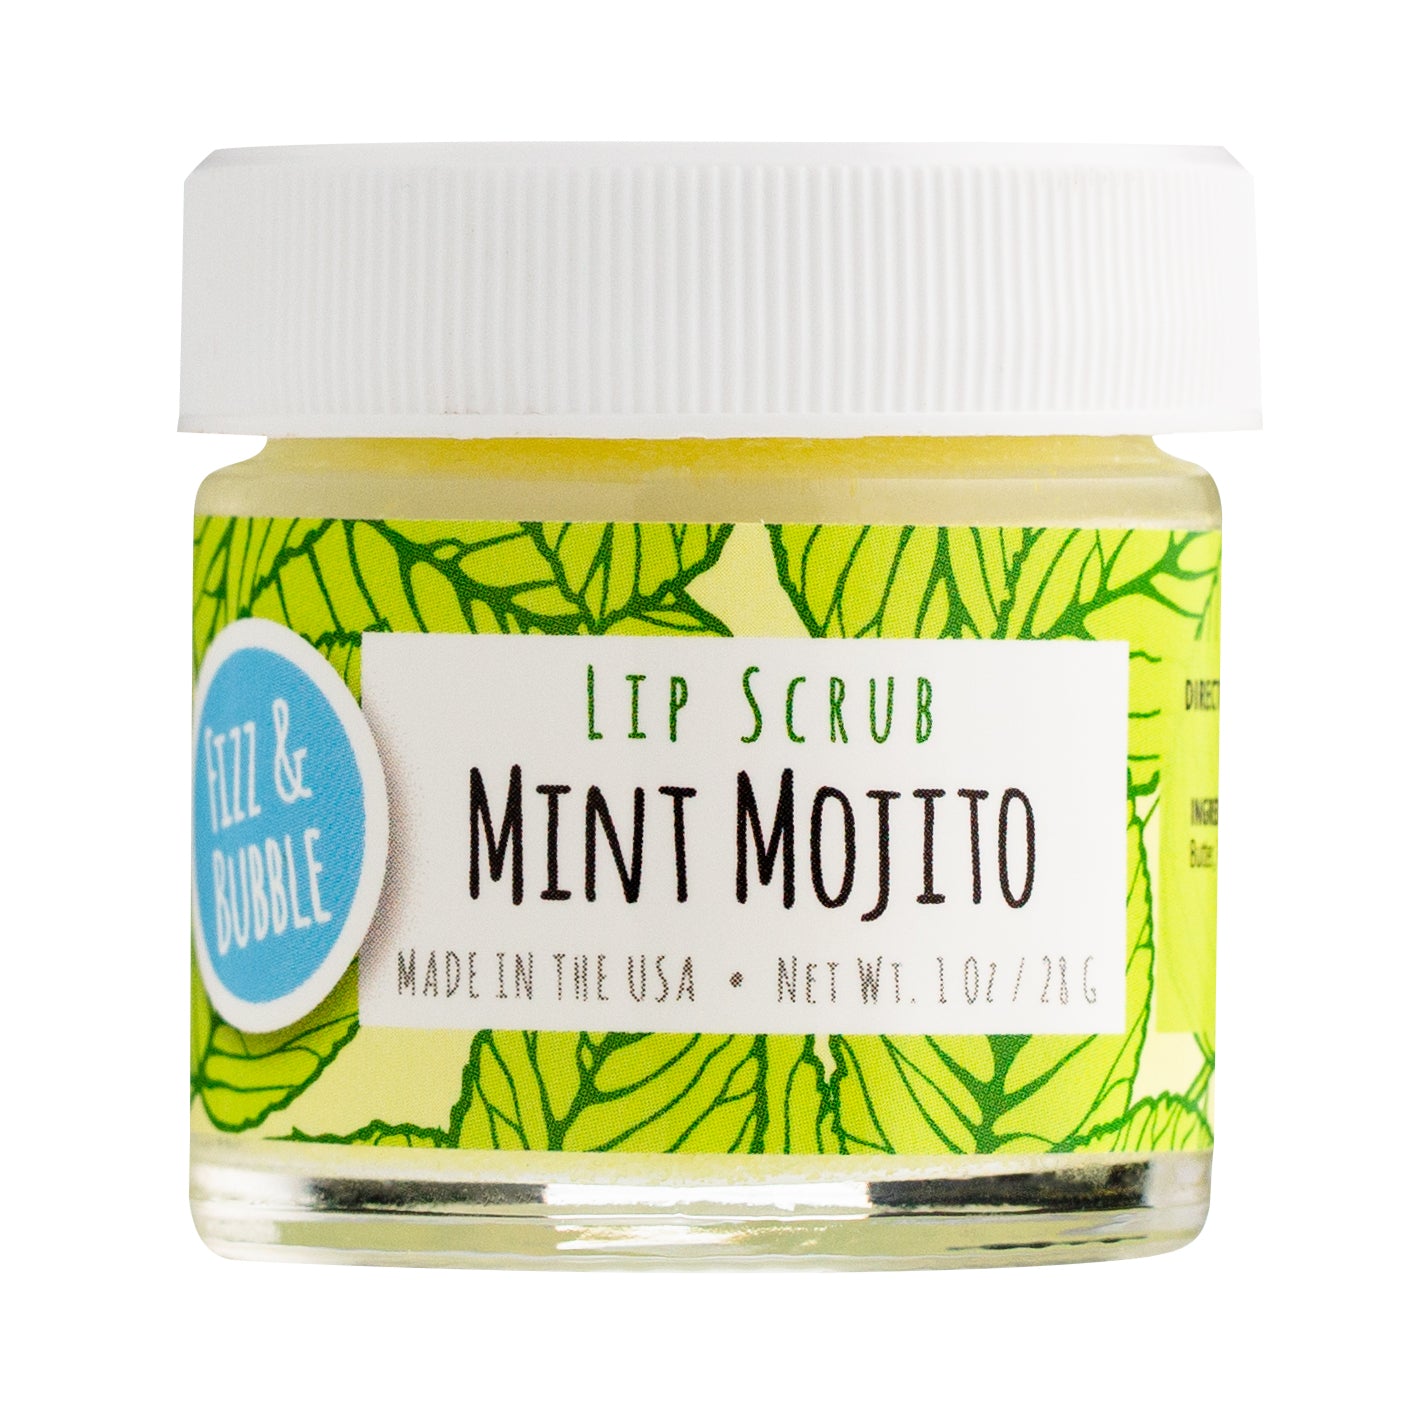 Mint Mojito Lip Scrub